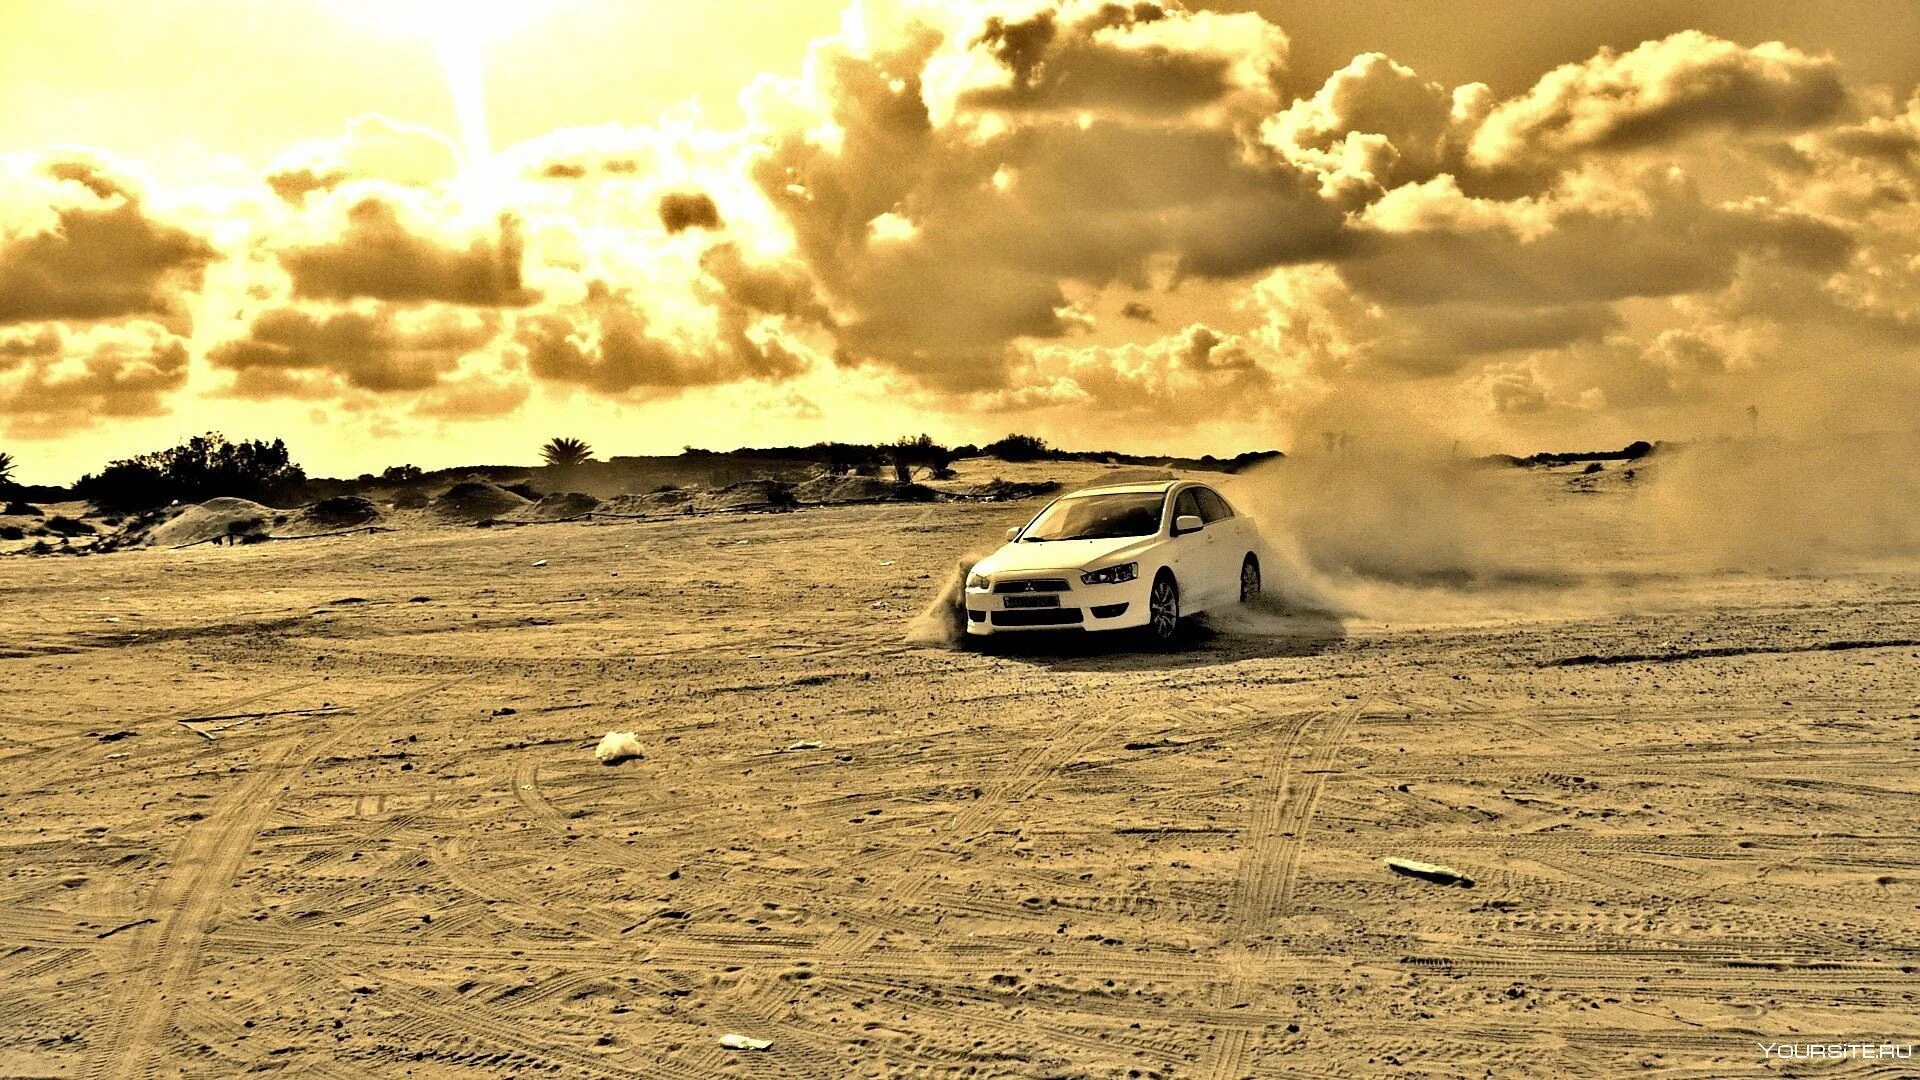 Машина в пустыне. Машина едет по пустыне. Автомобиль в далеке. Машина на дороге в пустыне. Машины едут по пустыне